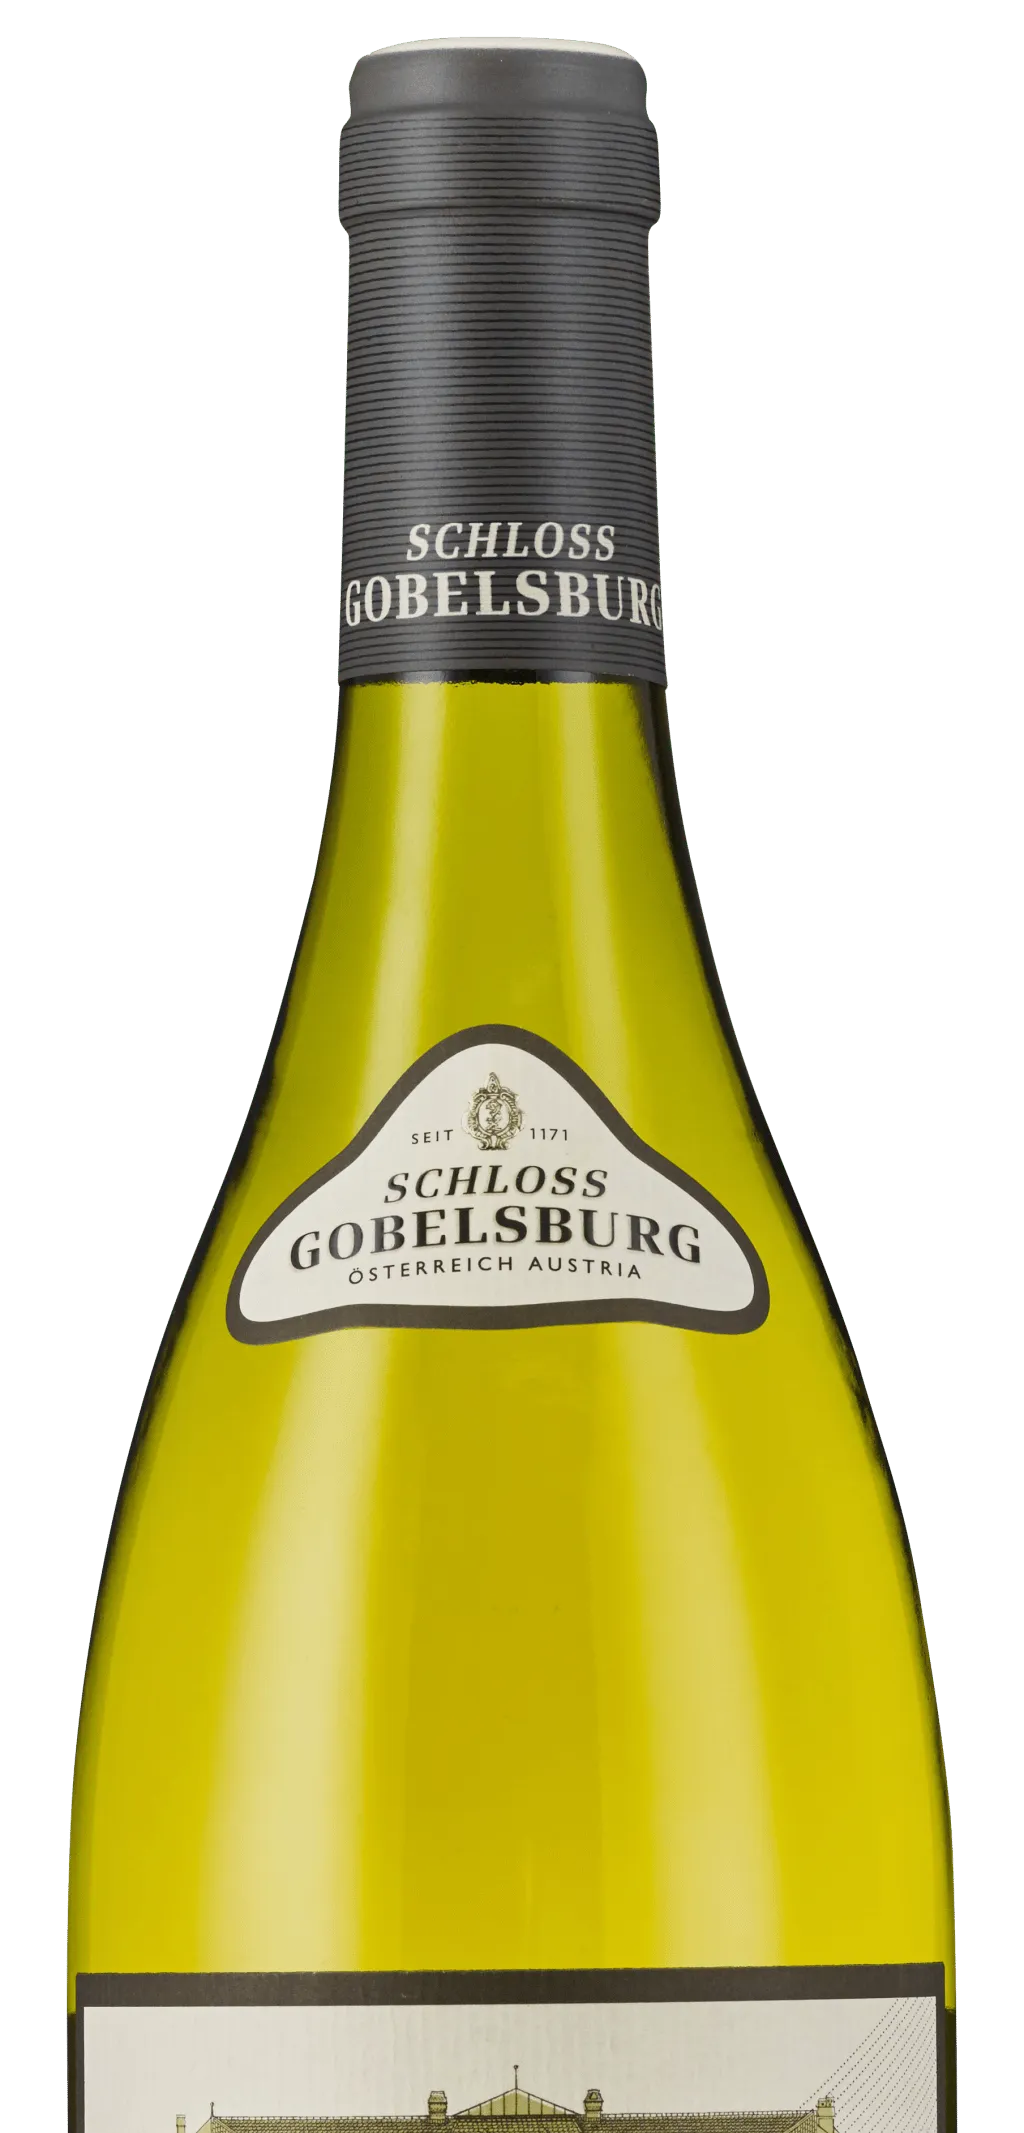 Bottle of Schloss Gobelsburg Grüner Veltliner Steinsetz from search results